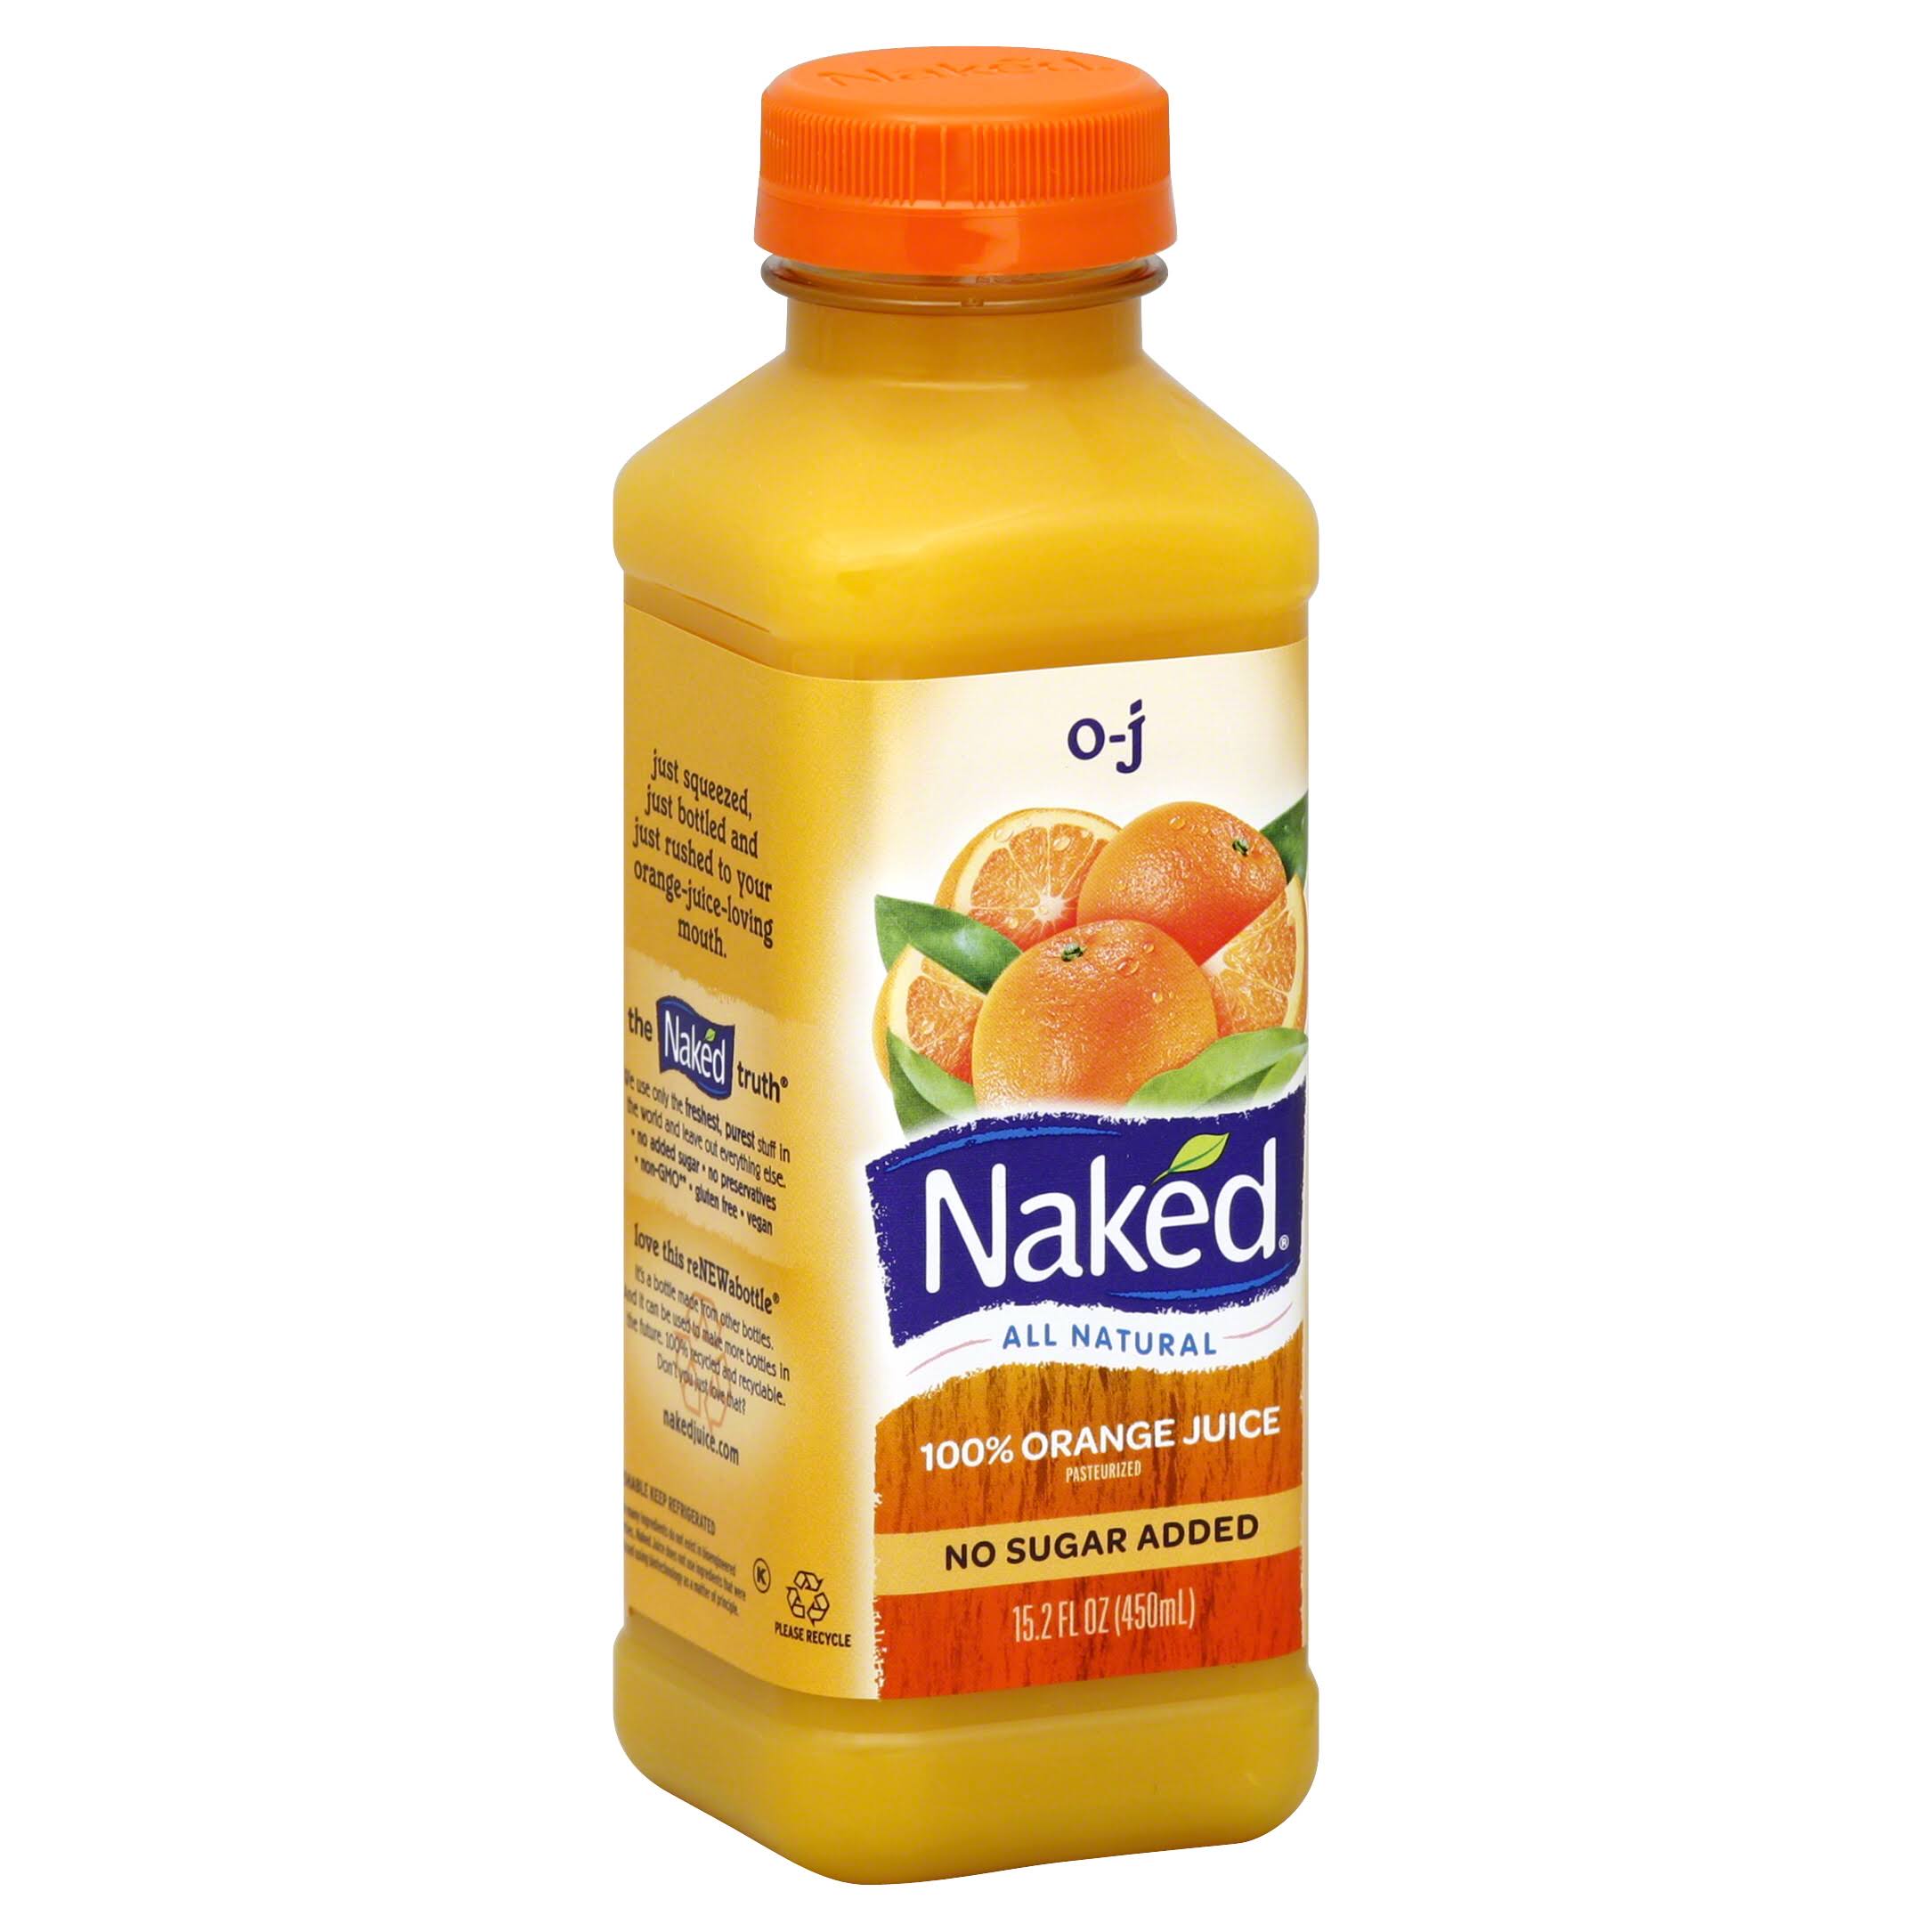 Naked Juice Orange Juice - O-J, 15.2oz